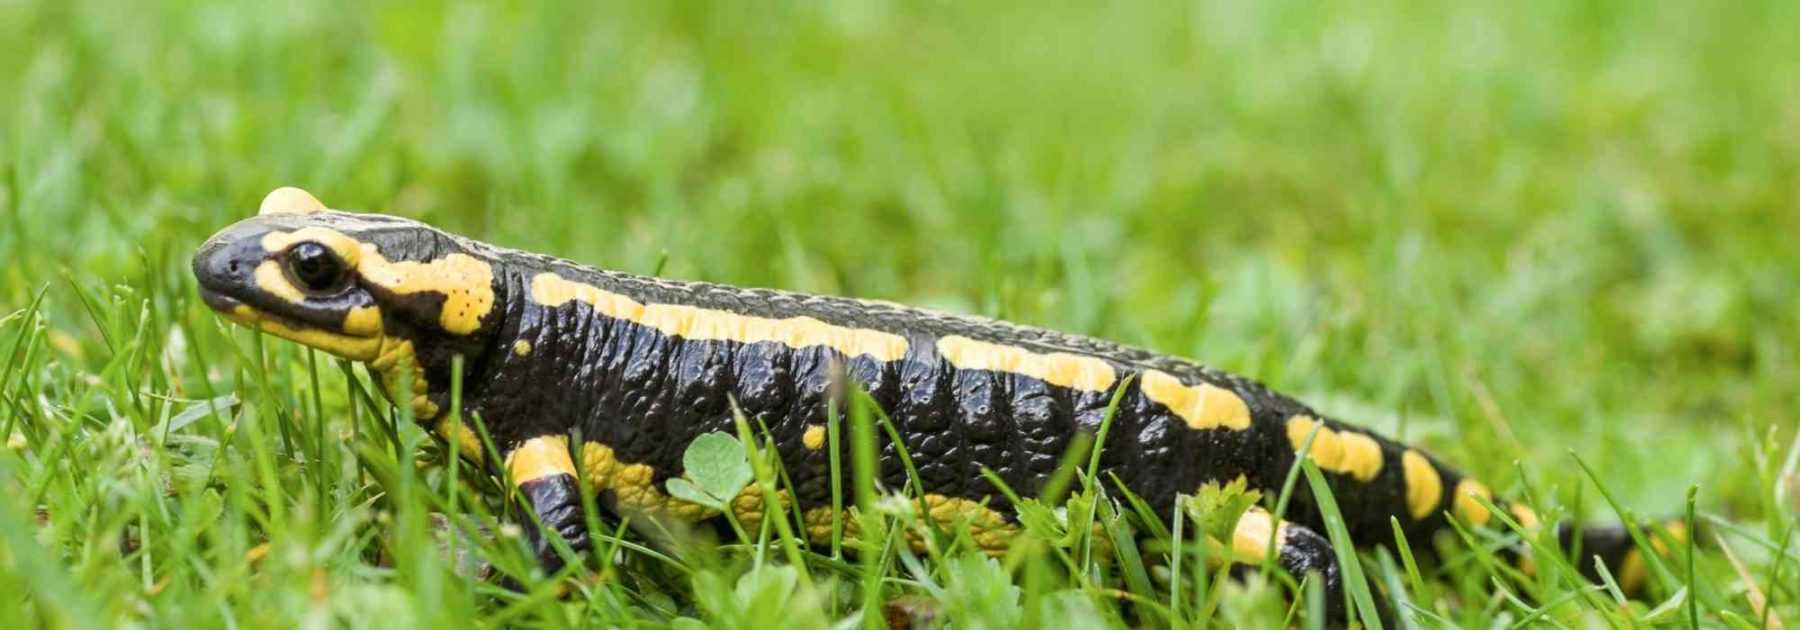 Pays d'Auray. Connaissez-vous la salamandre tachetée ?